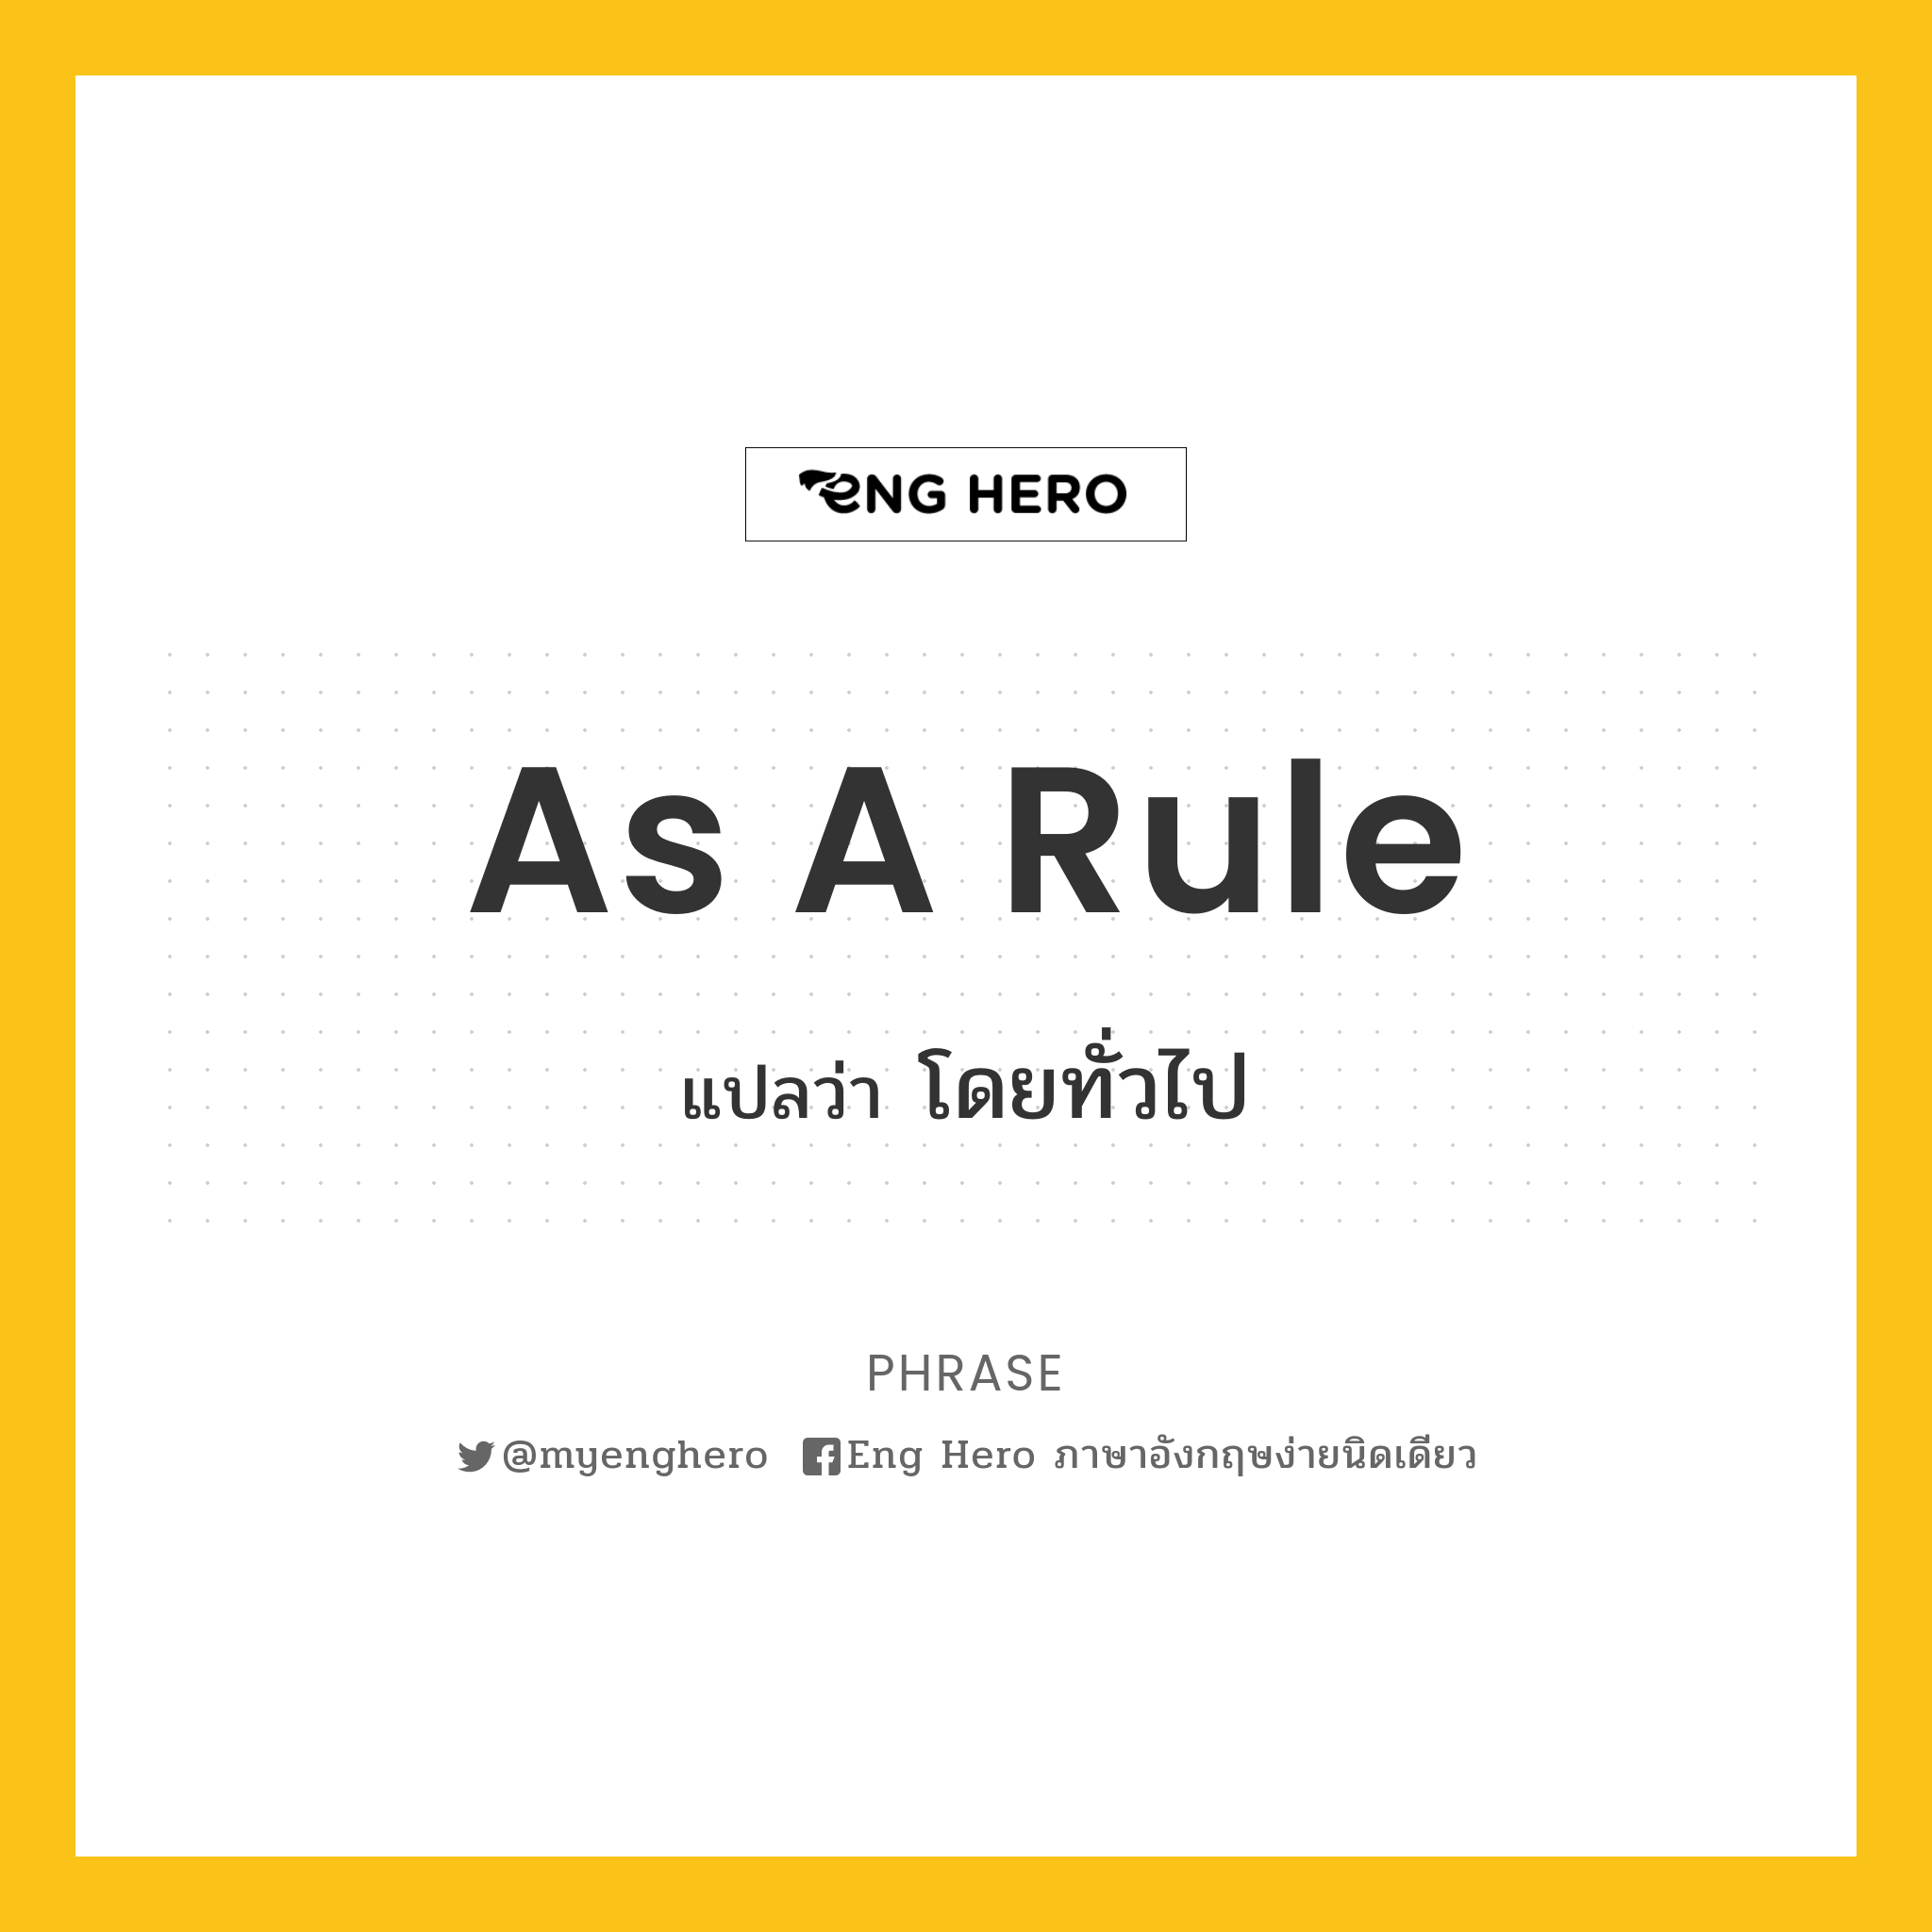 As a rule